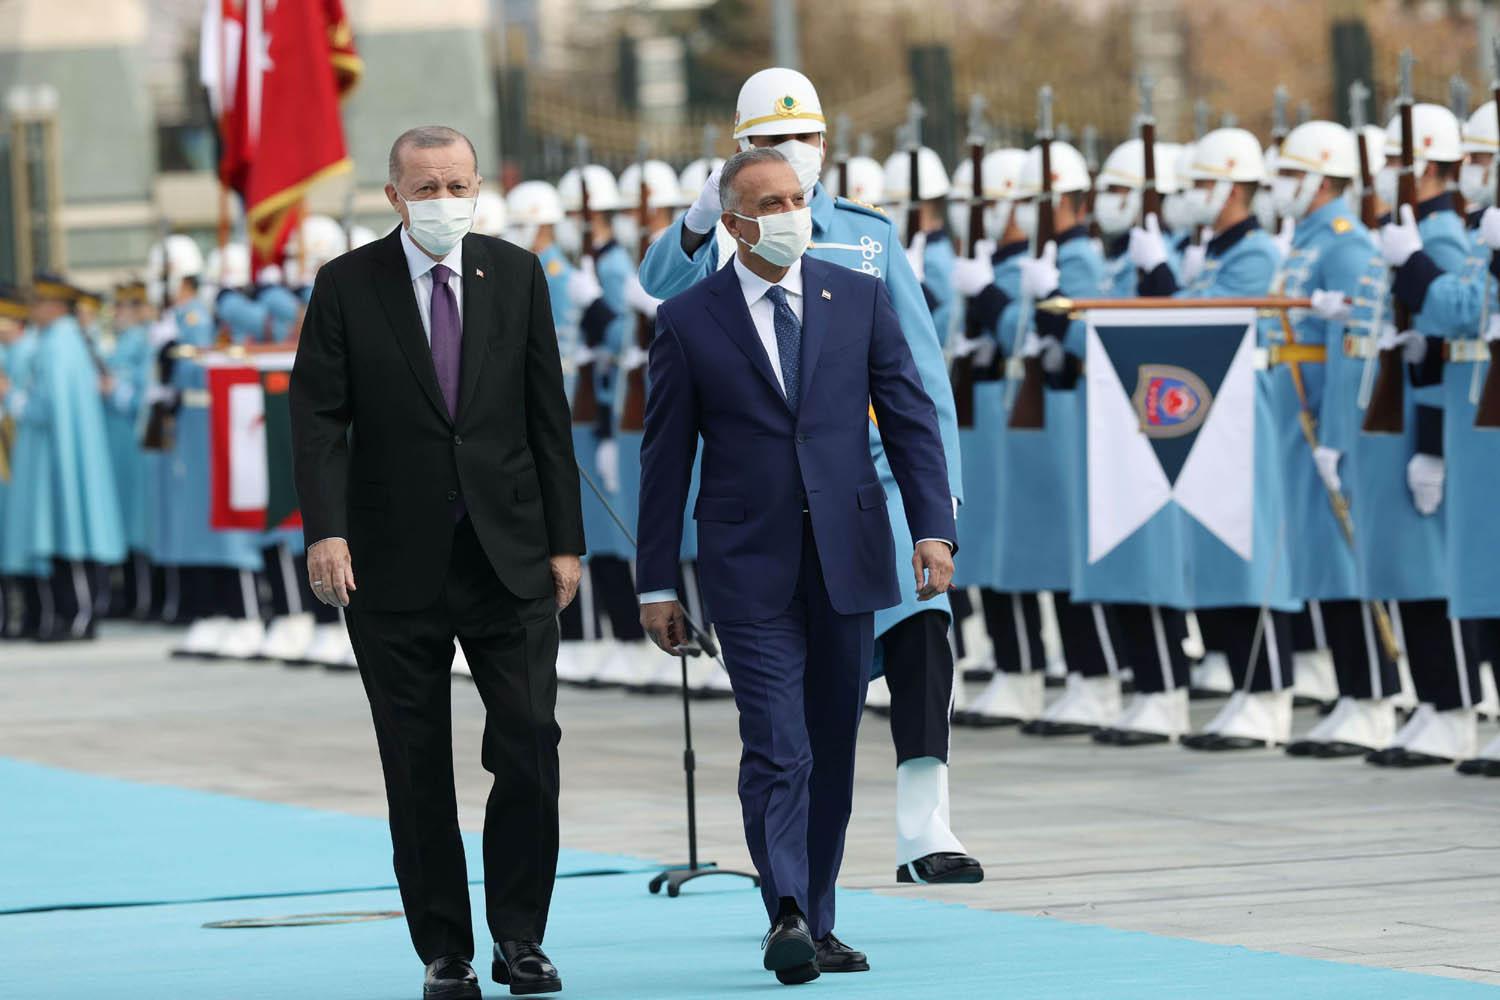 الرئيس التركي رجب طيب أردوغان يستعرض حرس الشرف أمام ضيفه رئيس الوزراء العراقي مصطفى الكاظمي